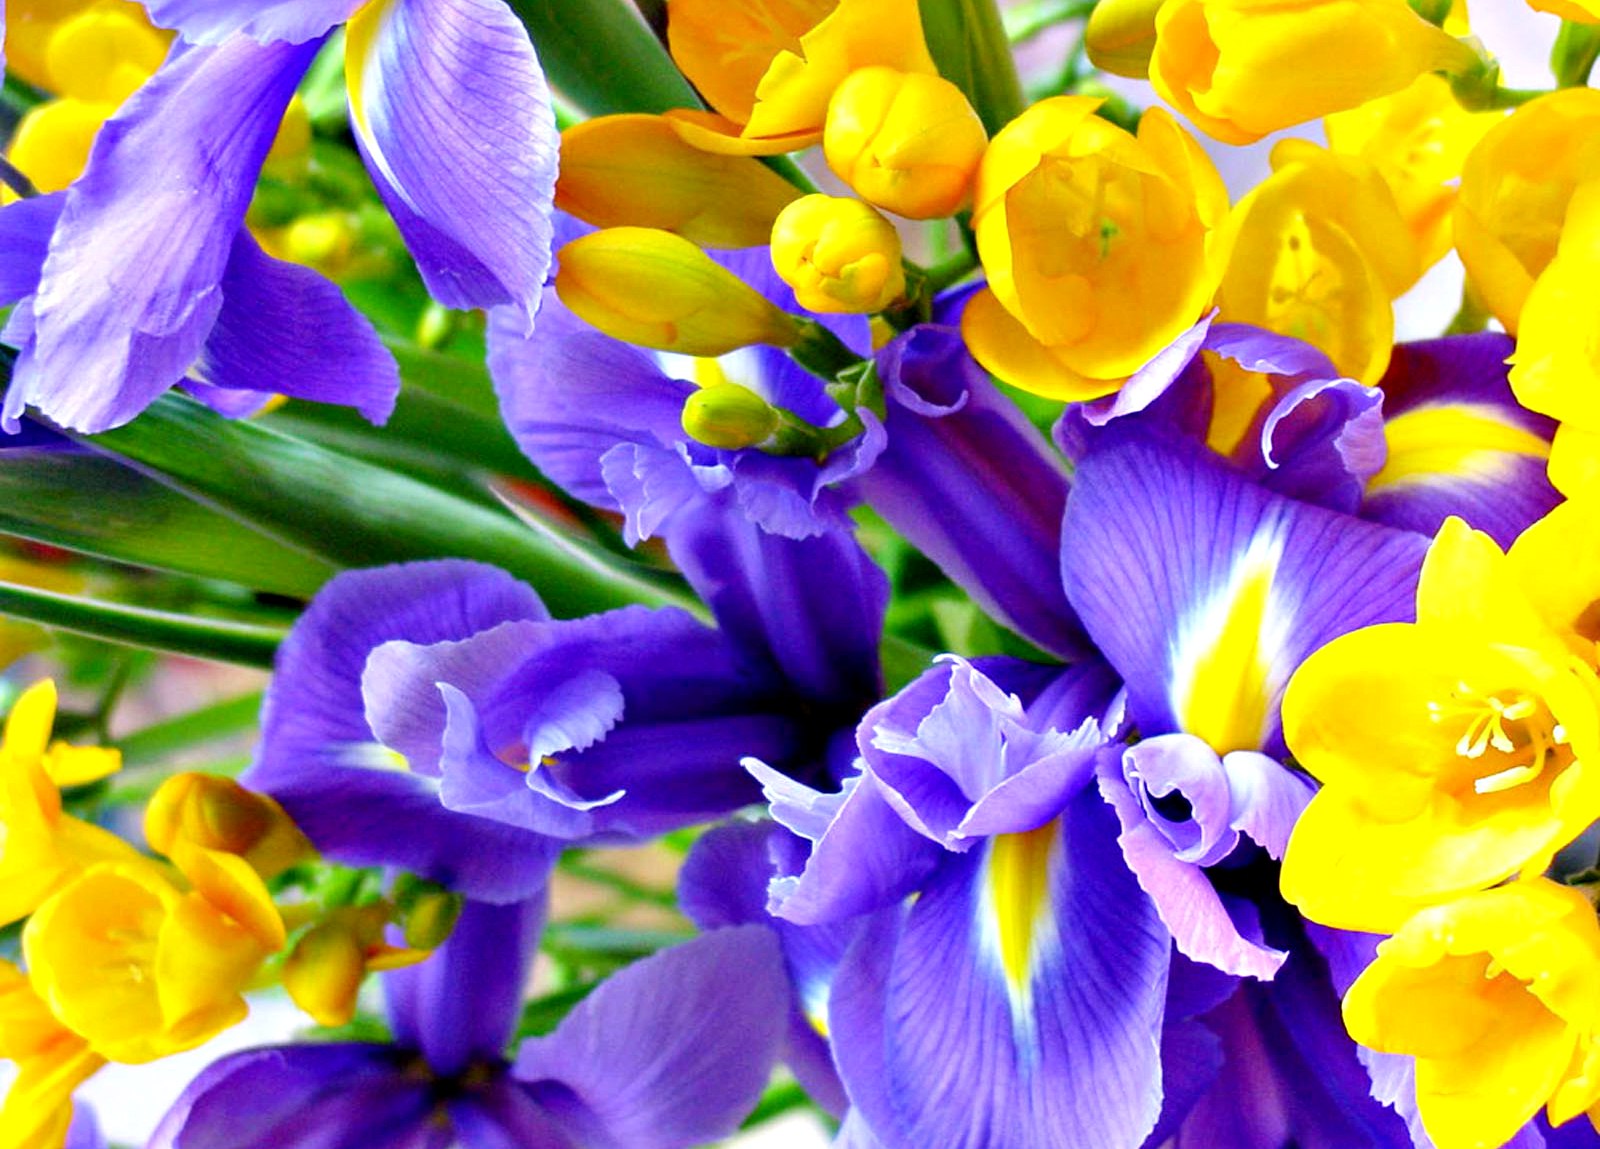 Gambar Bunga Cantik Related Keywords Gambar Bunga Cantik